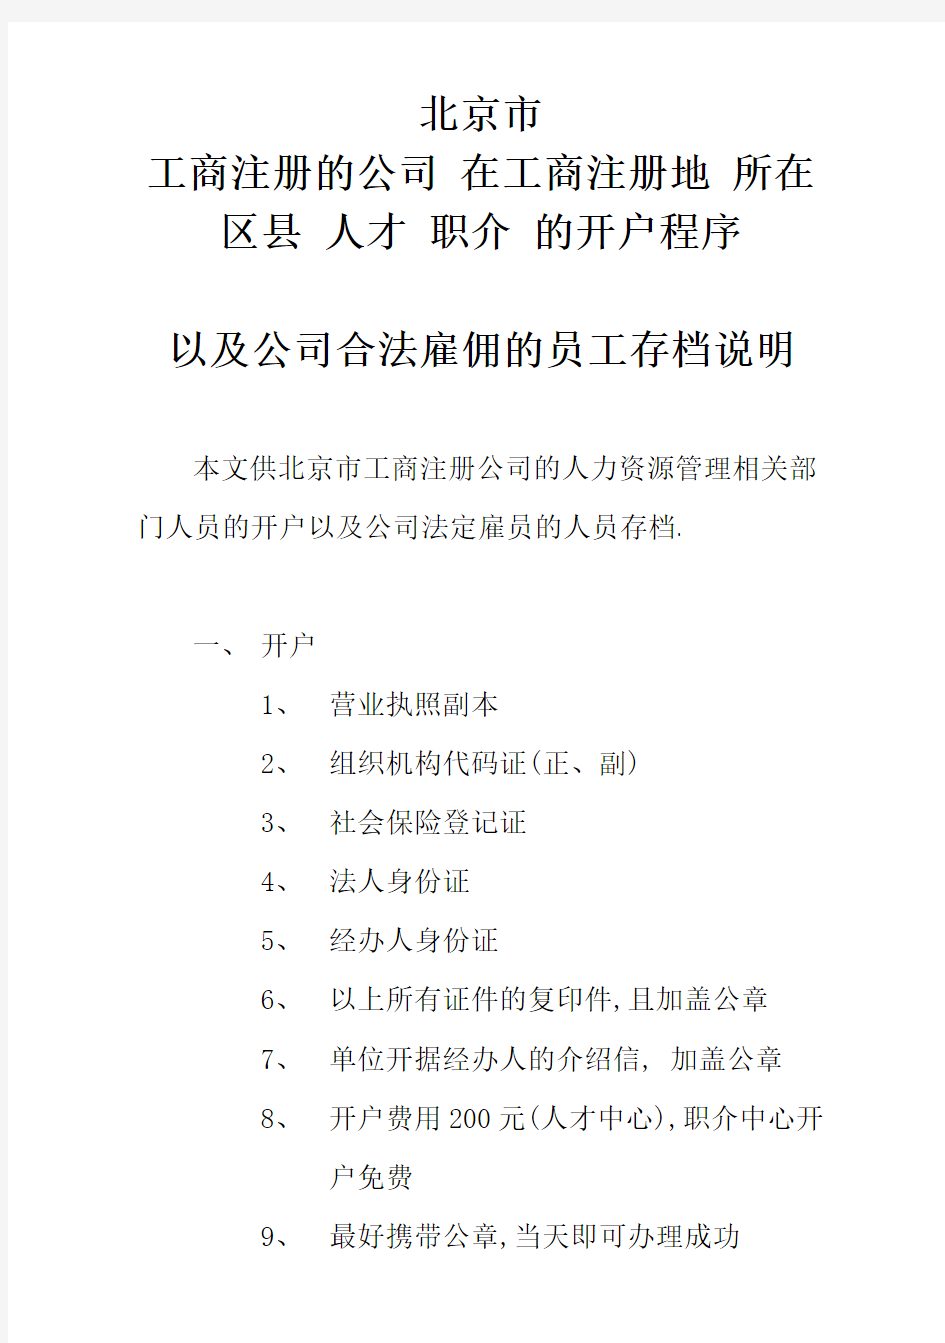 北京市单位在各区县人才职介开户及存档的程序介绍